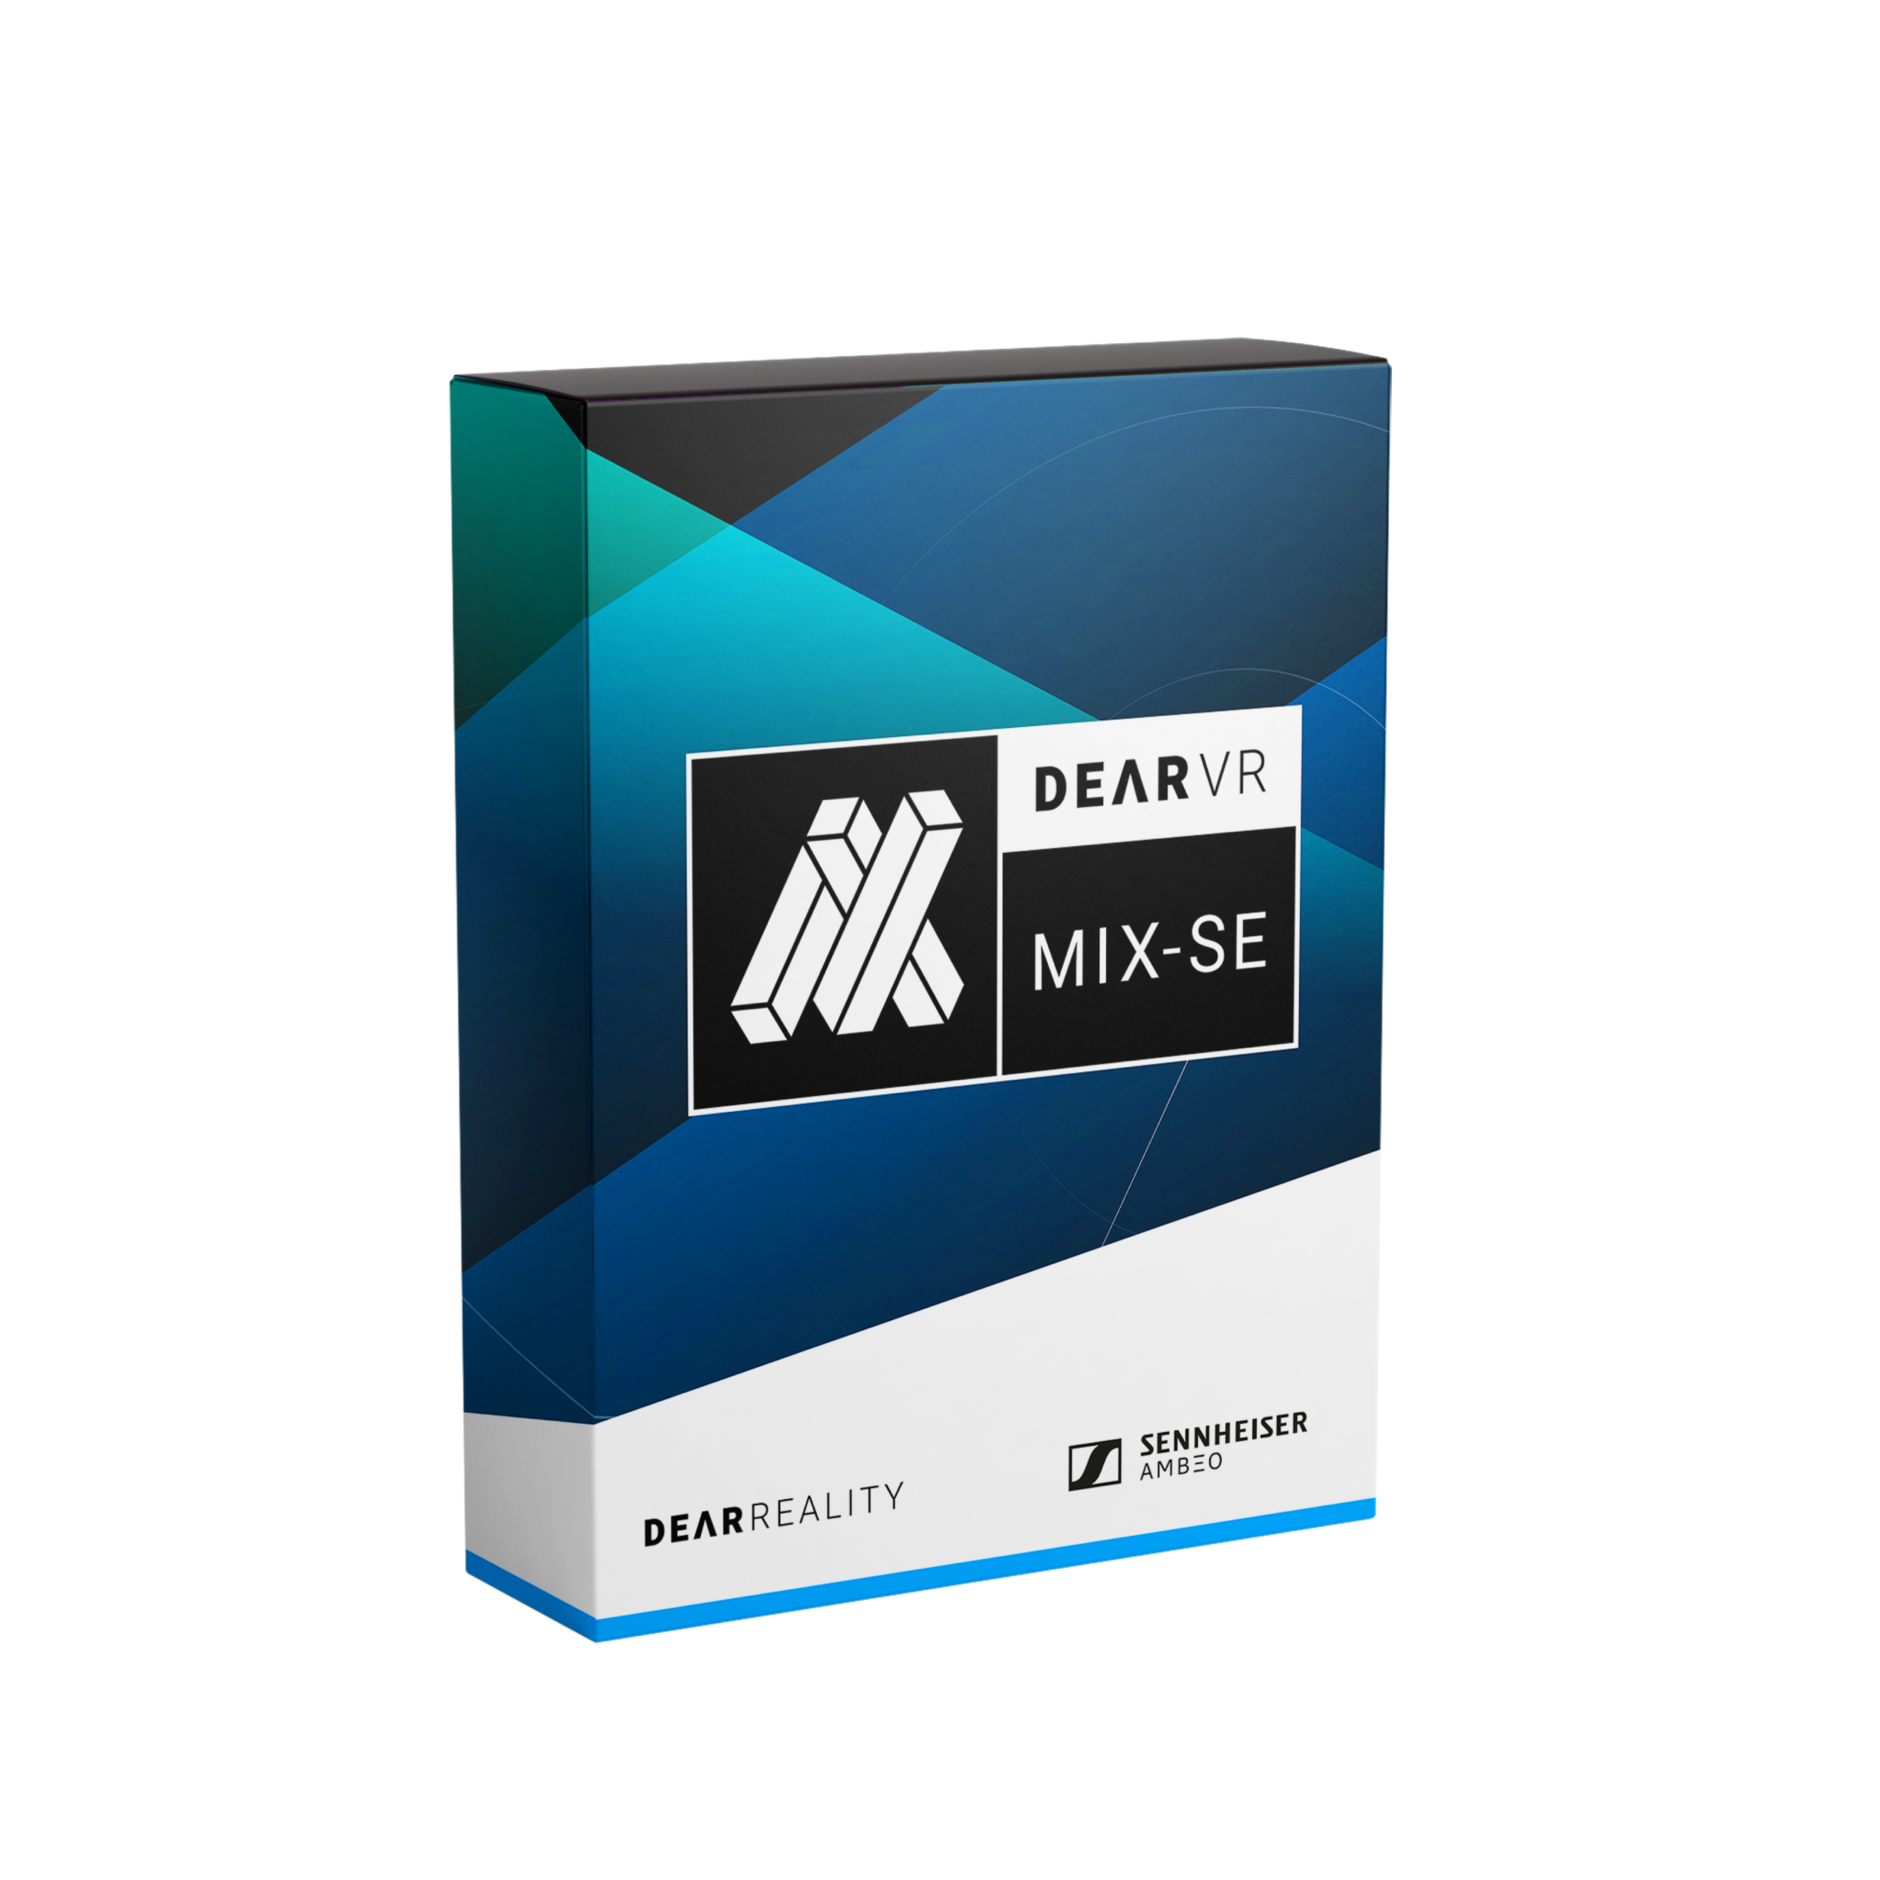 Inclut le plug-in de mixage virtuel dearVR MIX-SE